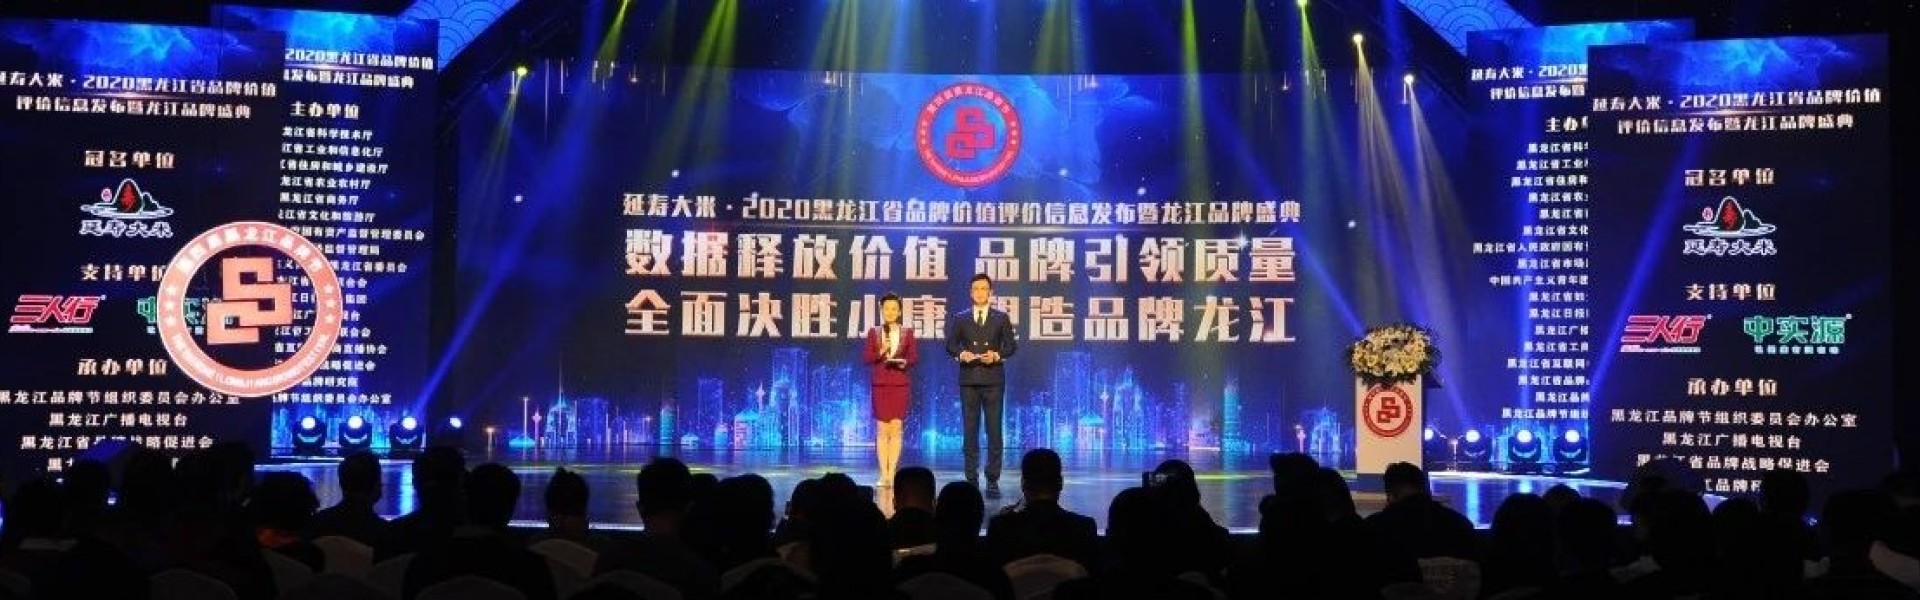 延寿大米·2020黑龙江省品牌价值评价信息发布暨龙江品牌盛典颁奖晚会在哈隆重举行